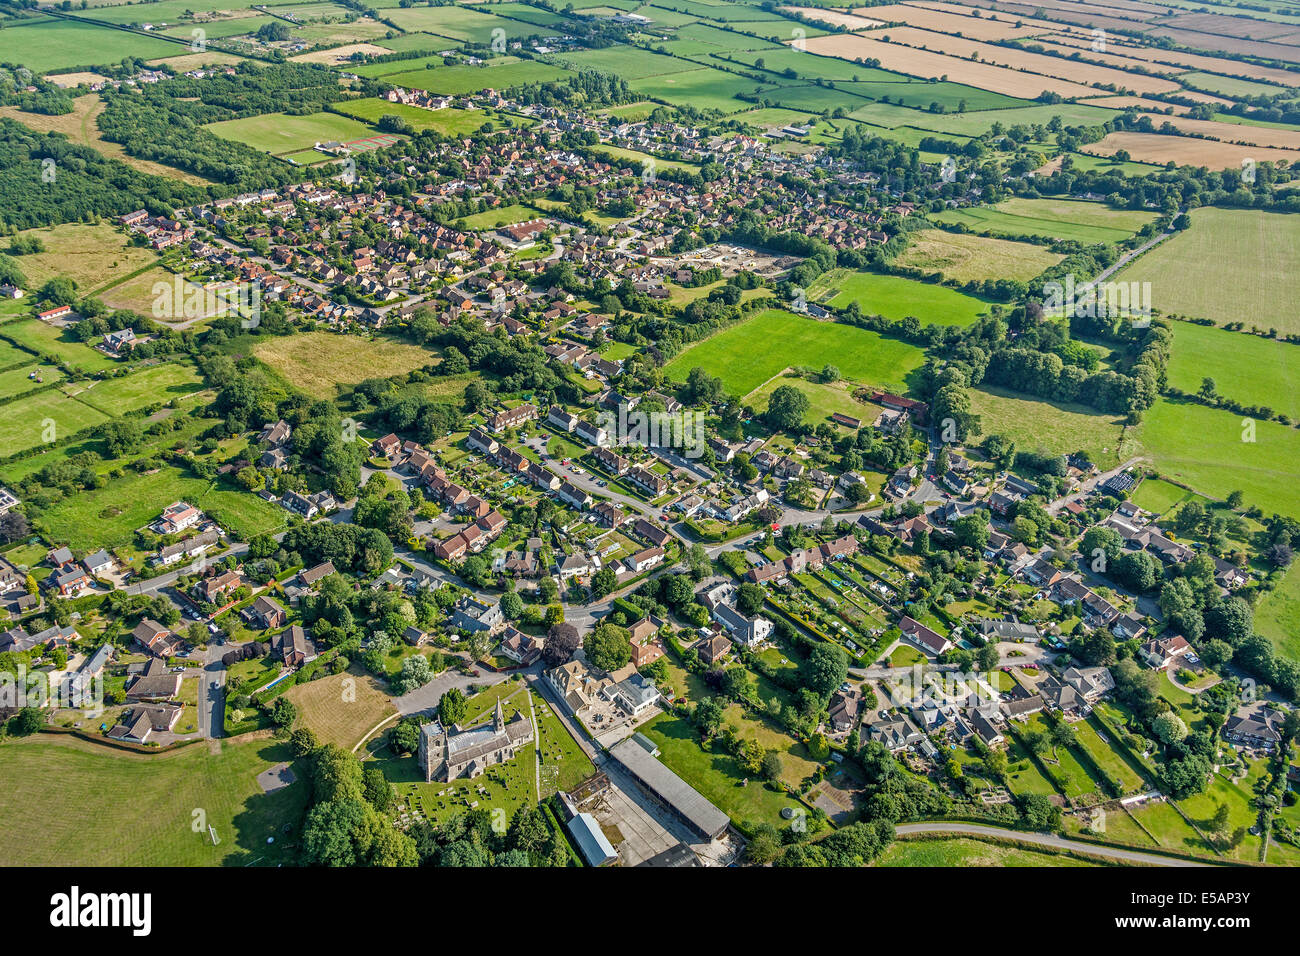 Luftaufnahme des Dorfes Wanborough in der Nähe von Swindon in Wiltshire, England, Vereinigtes Königreich auf der alten Roman Ermin Straße oder Weg. JMH6162 Stockfoto